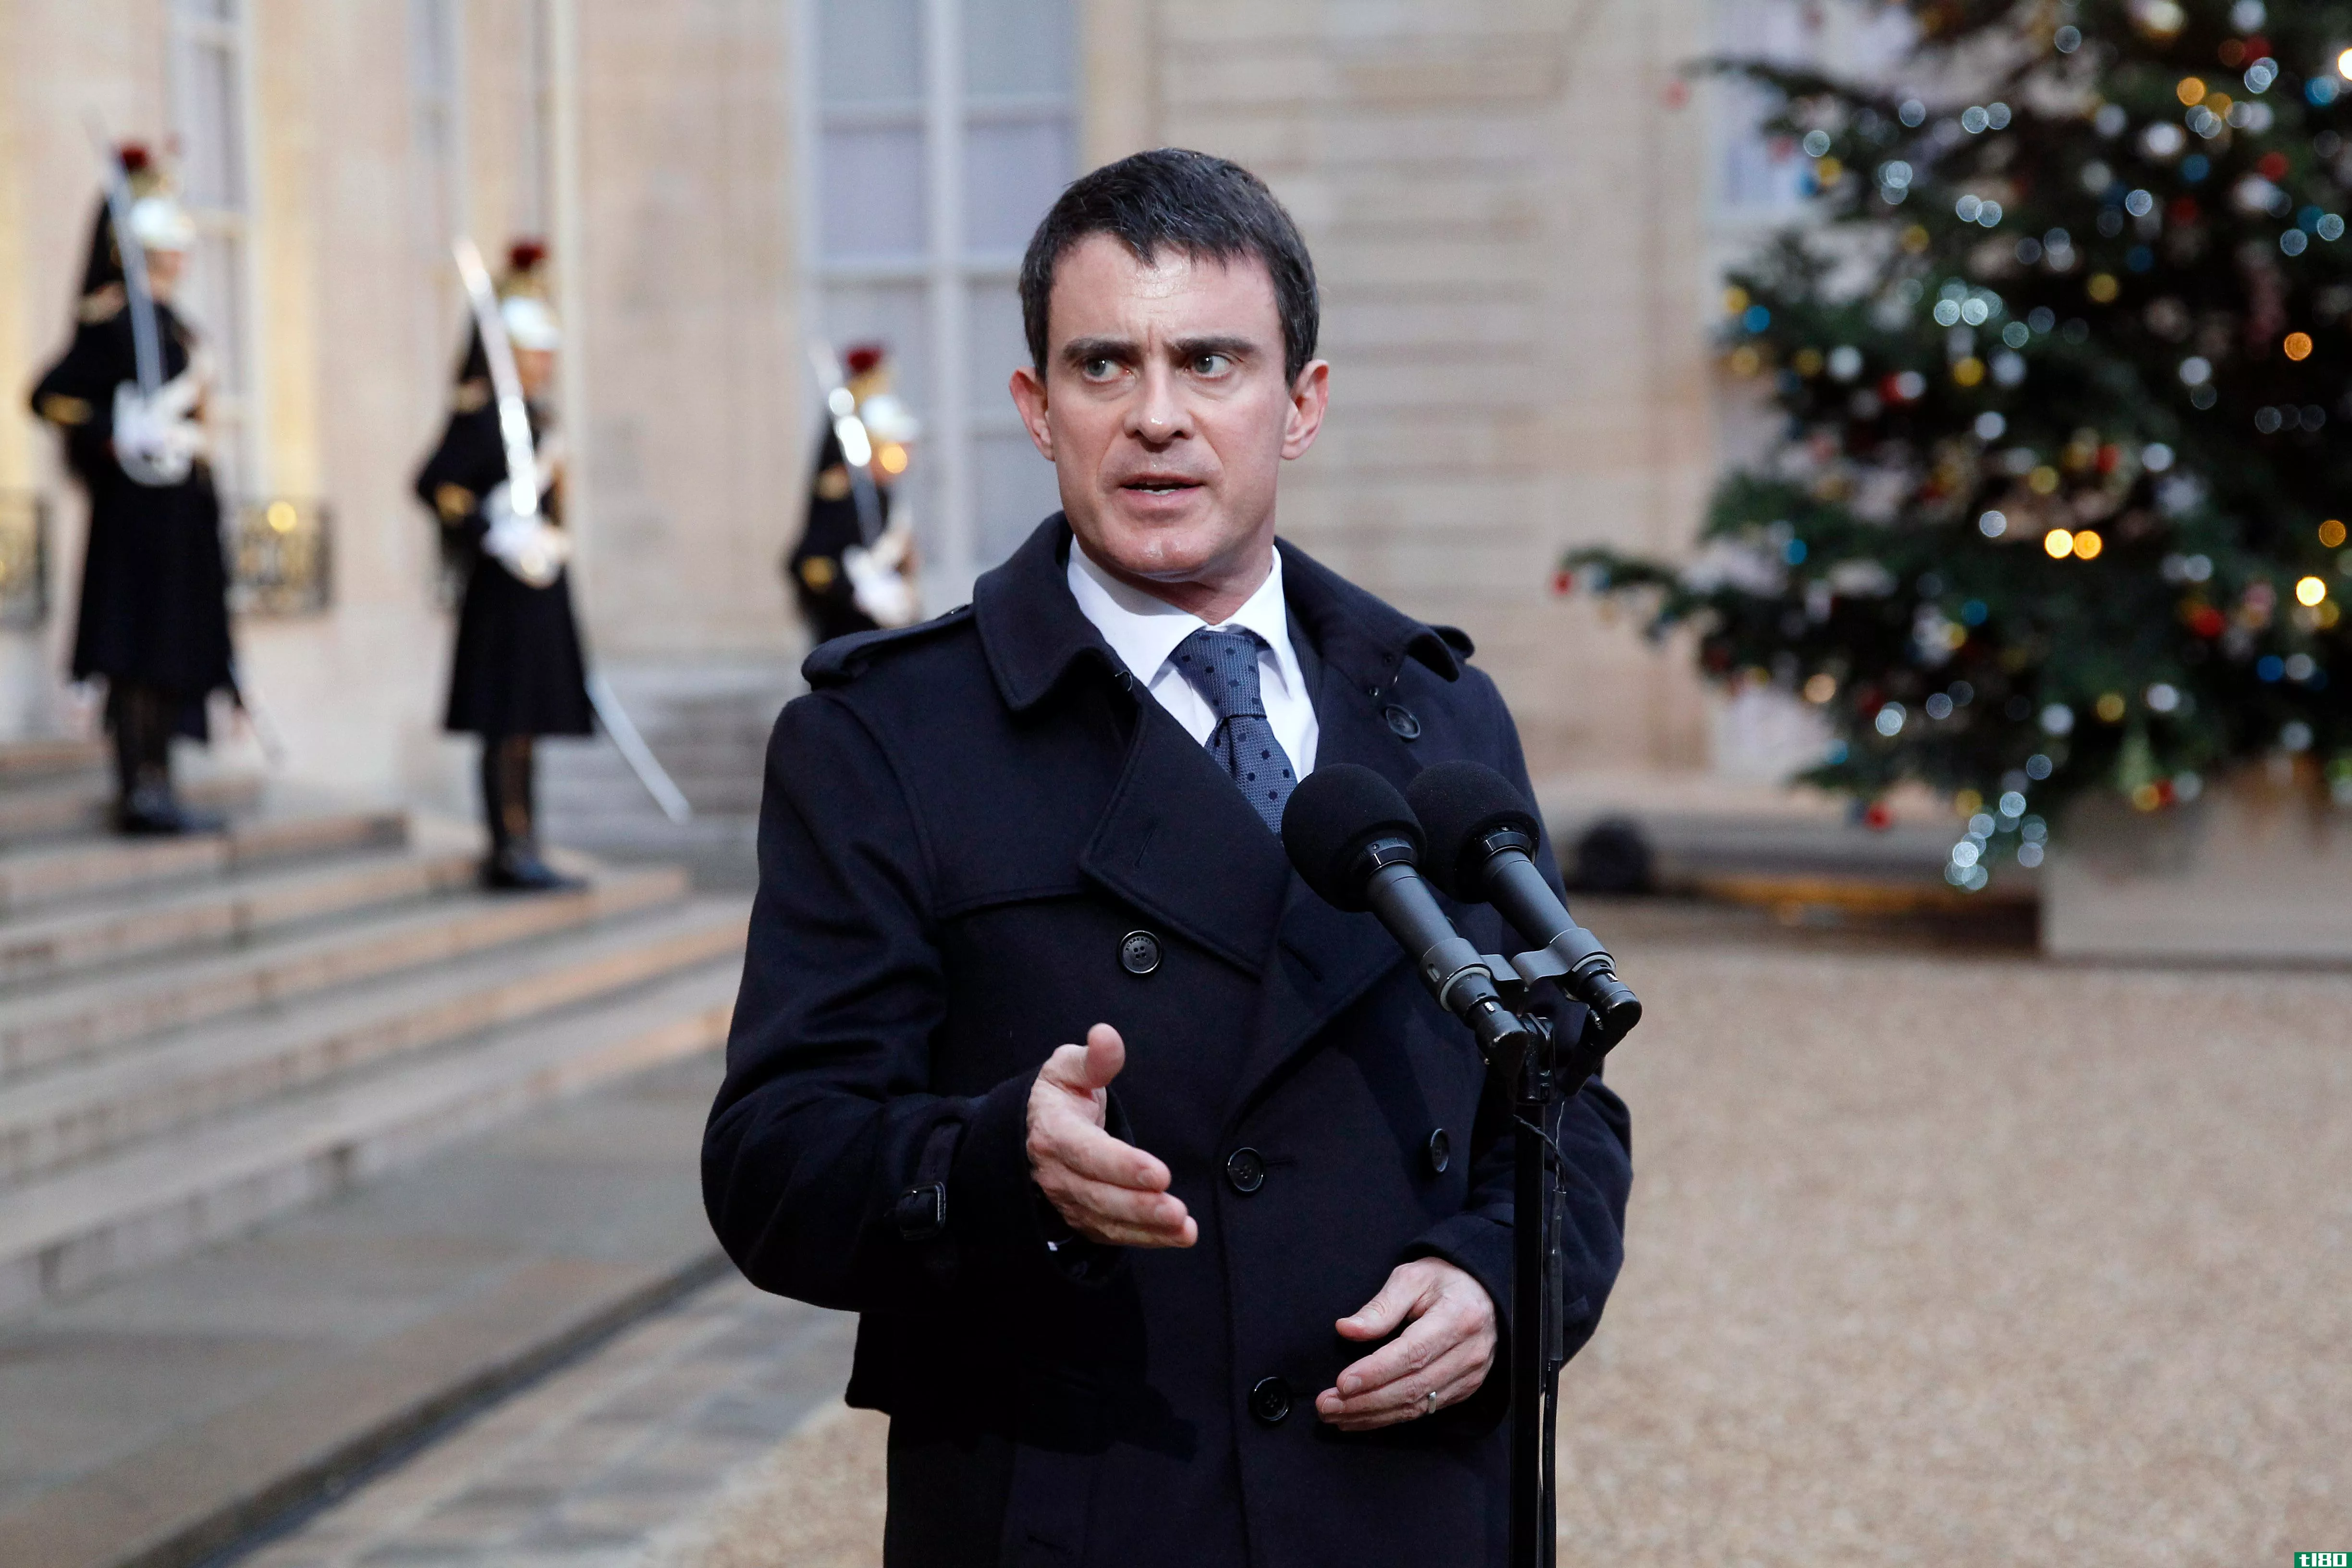 法国想通过监视每个人来打击恐怖主义